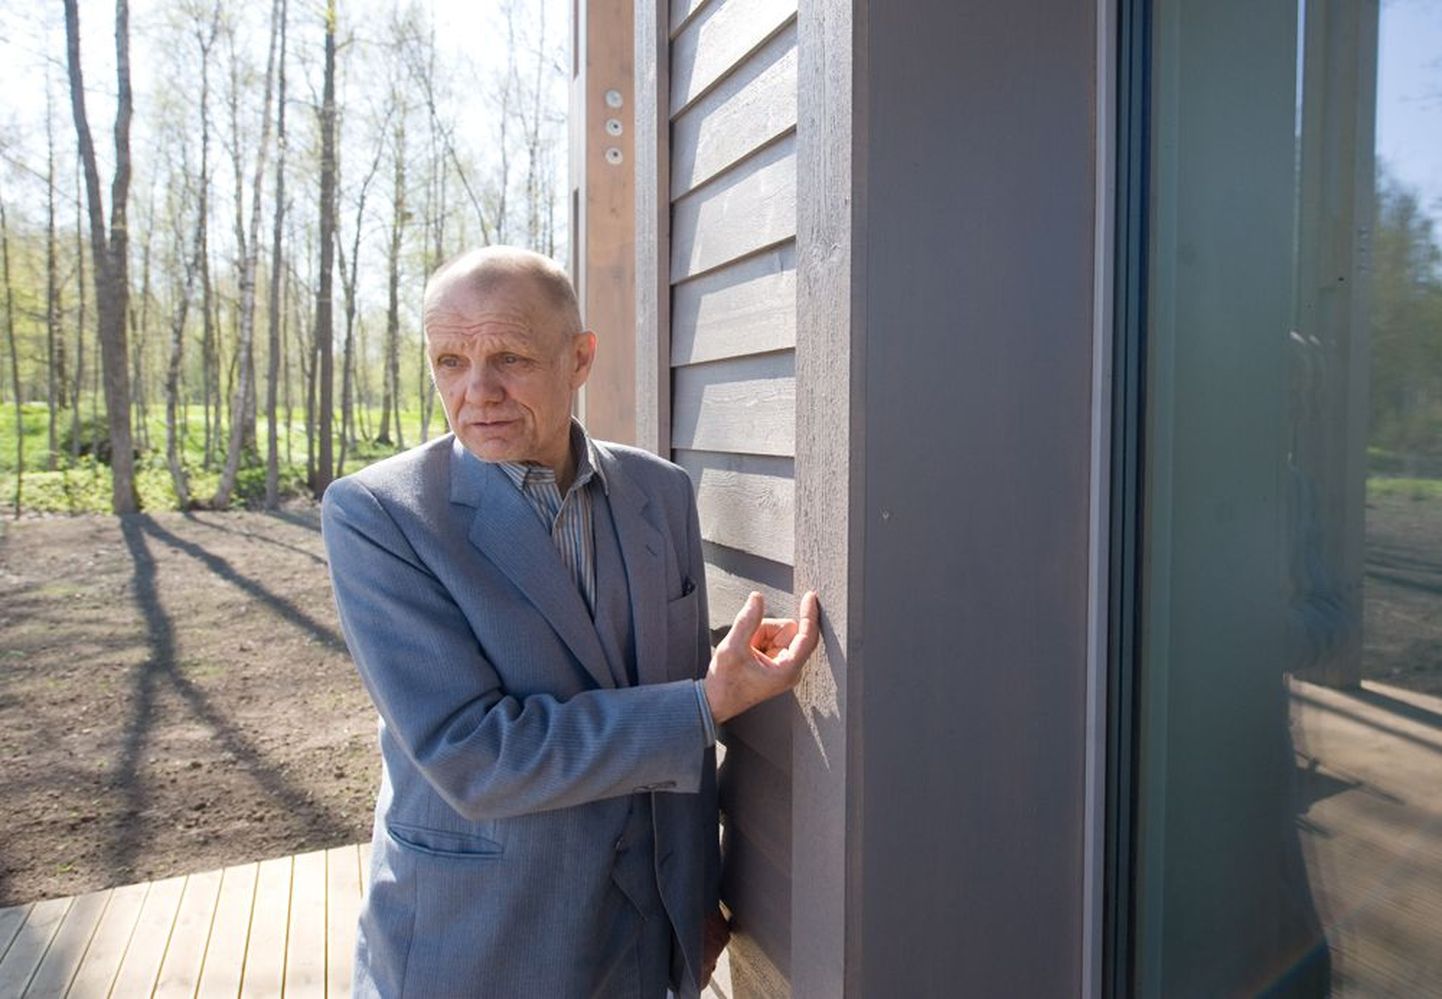 Ehitusekspert Hindrek Virkus kinnitab, et soojapidava maja puhul peaks välisseinte soojustuse paksus olema vähemalt 30–40 sentimeetrit.